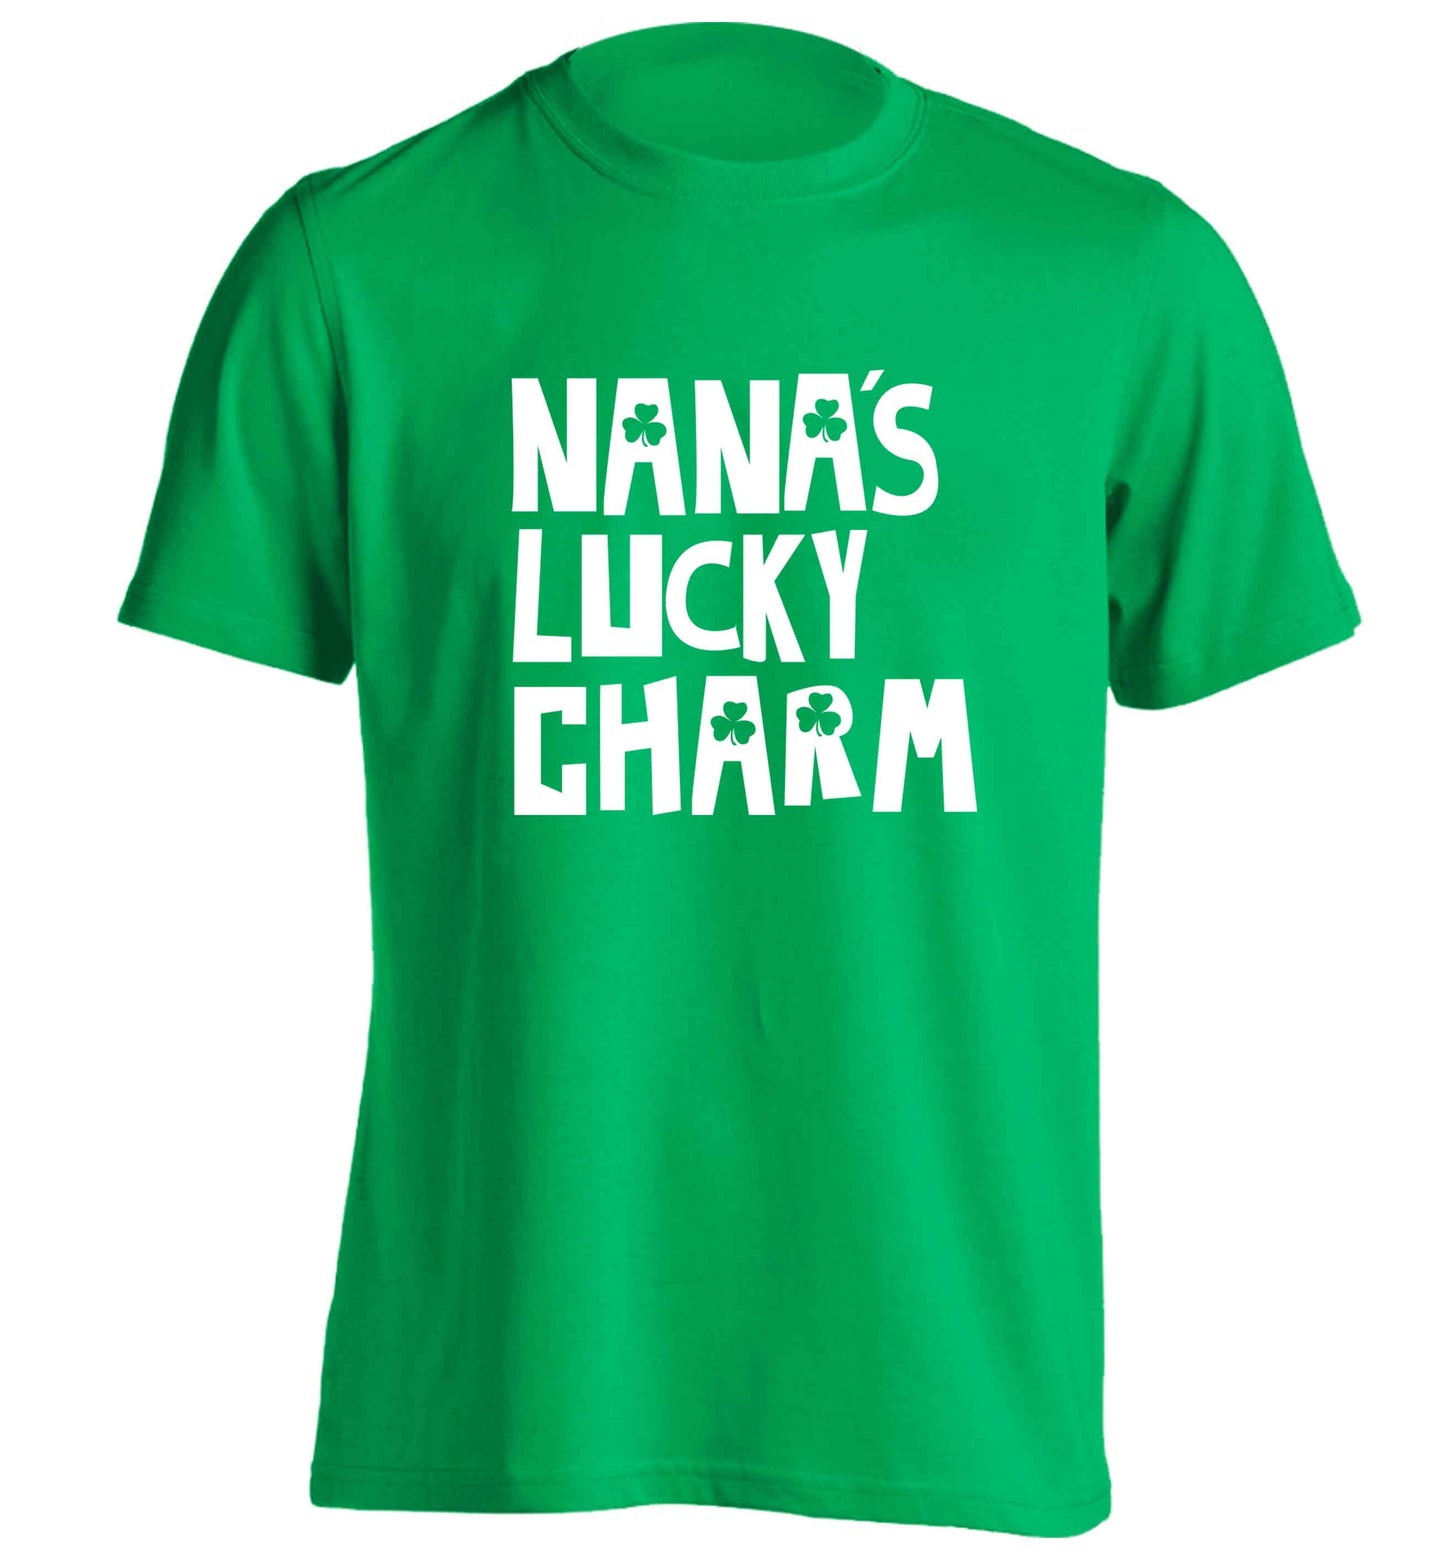 Nana's lucky charm adults unisex green Tshirt 2XL